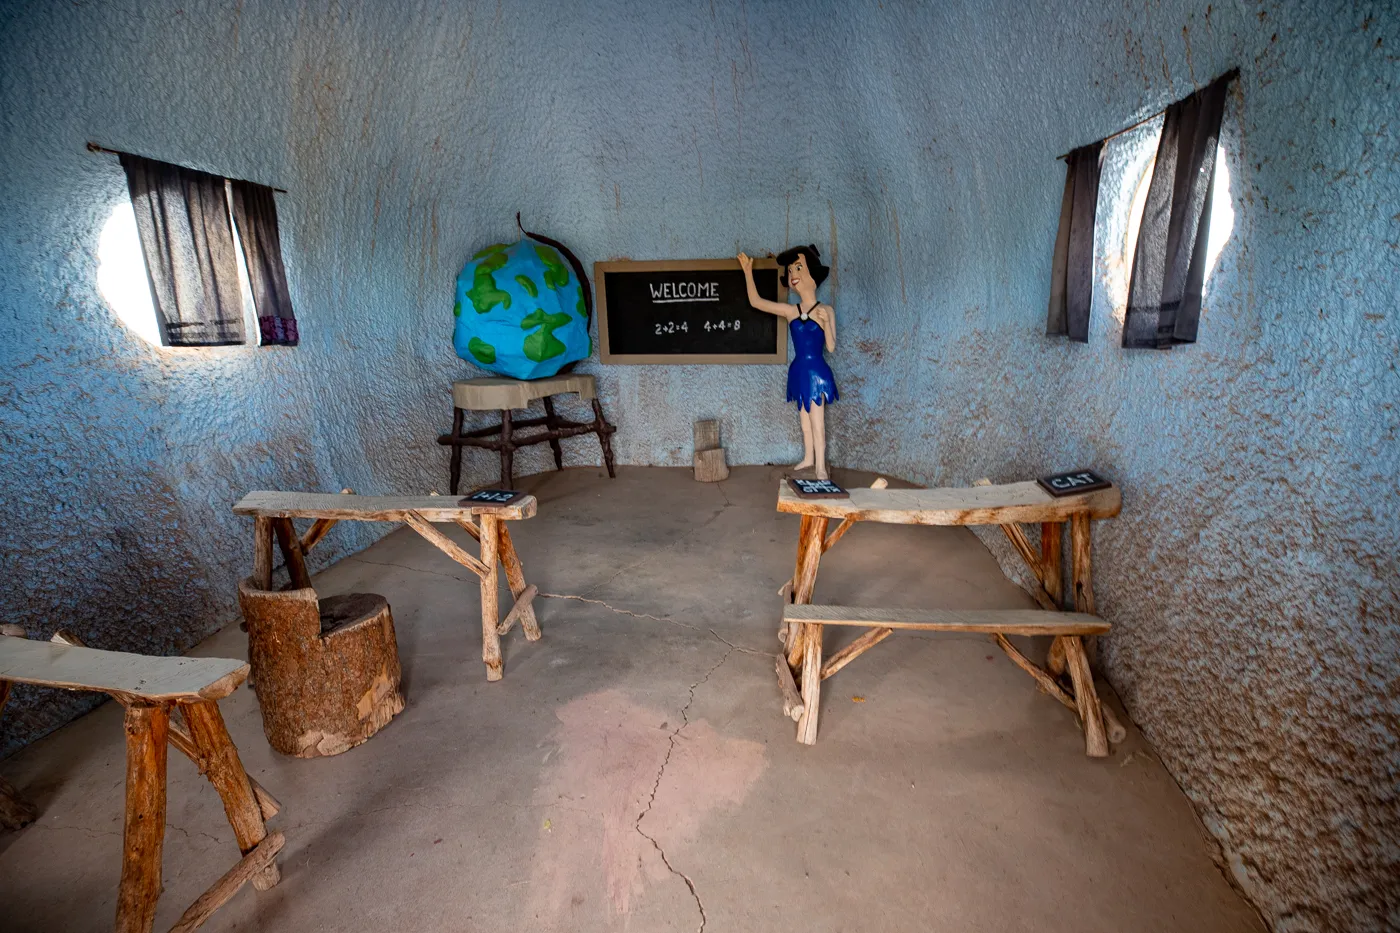 Betty Rubble Teaching inside the School at Flintstones Bedrock City in Williams, Arizona